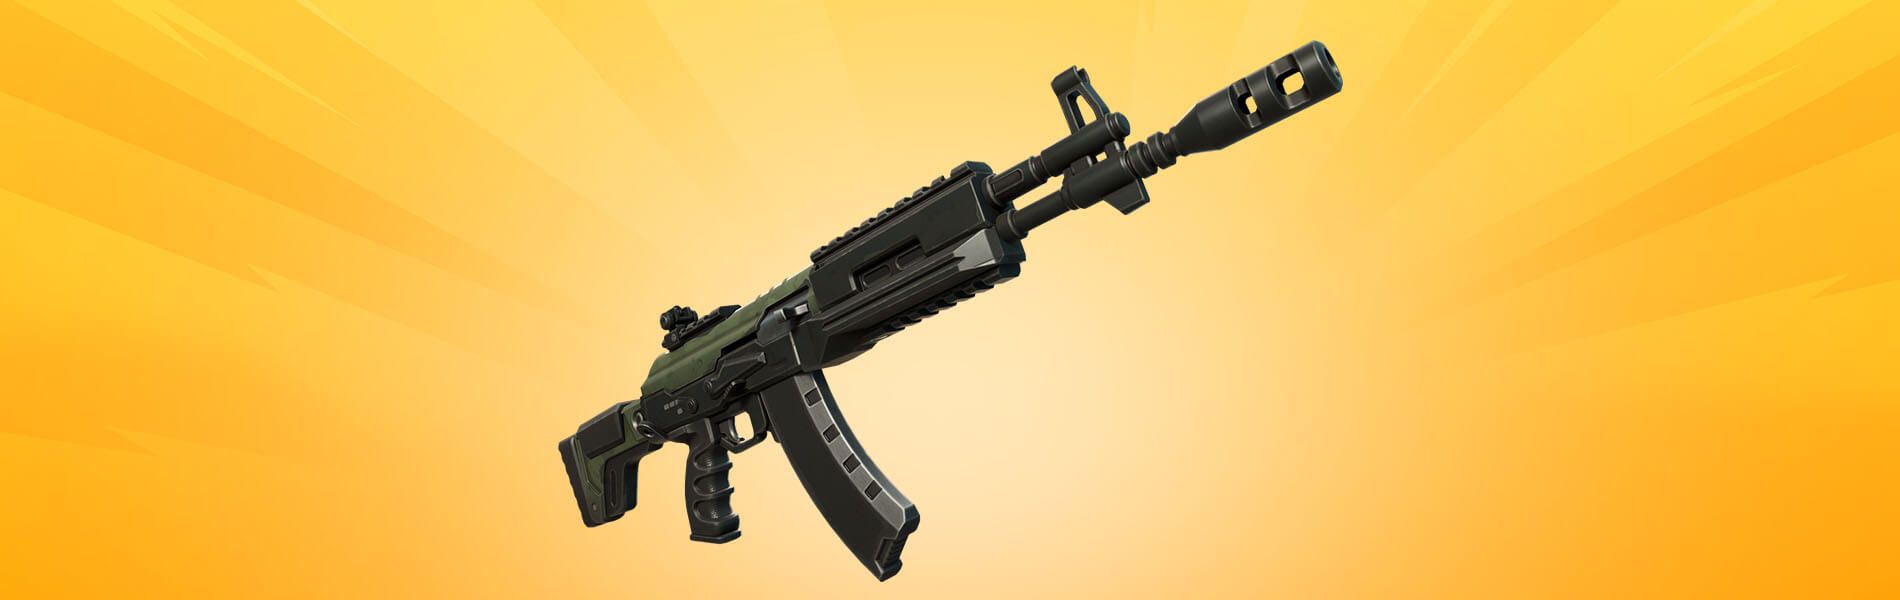 fortnite new guns ranger assault rifle